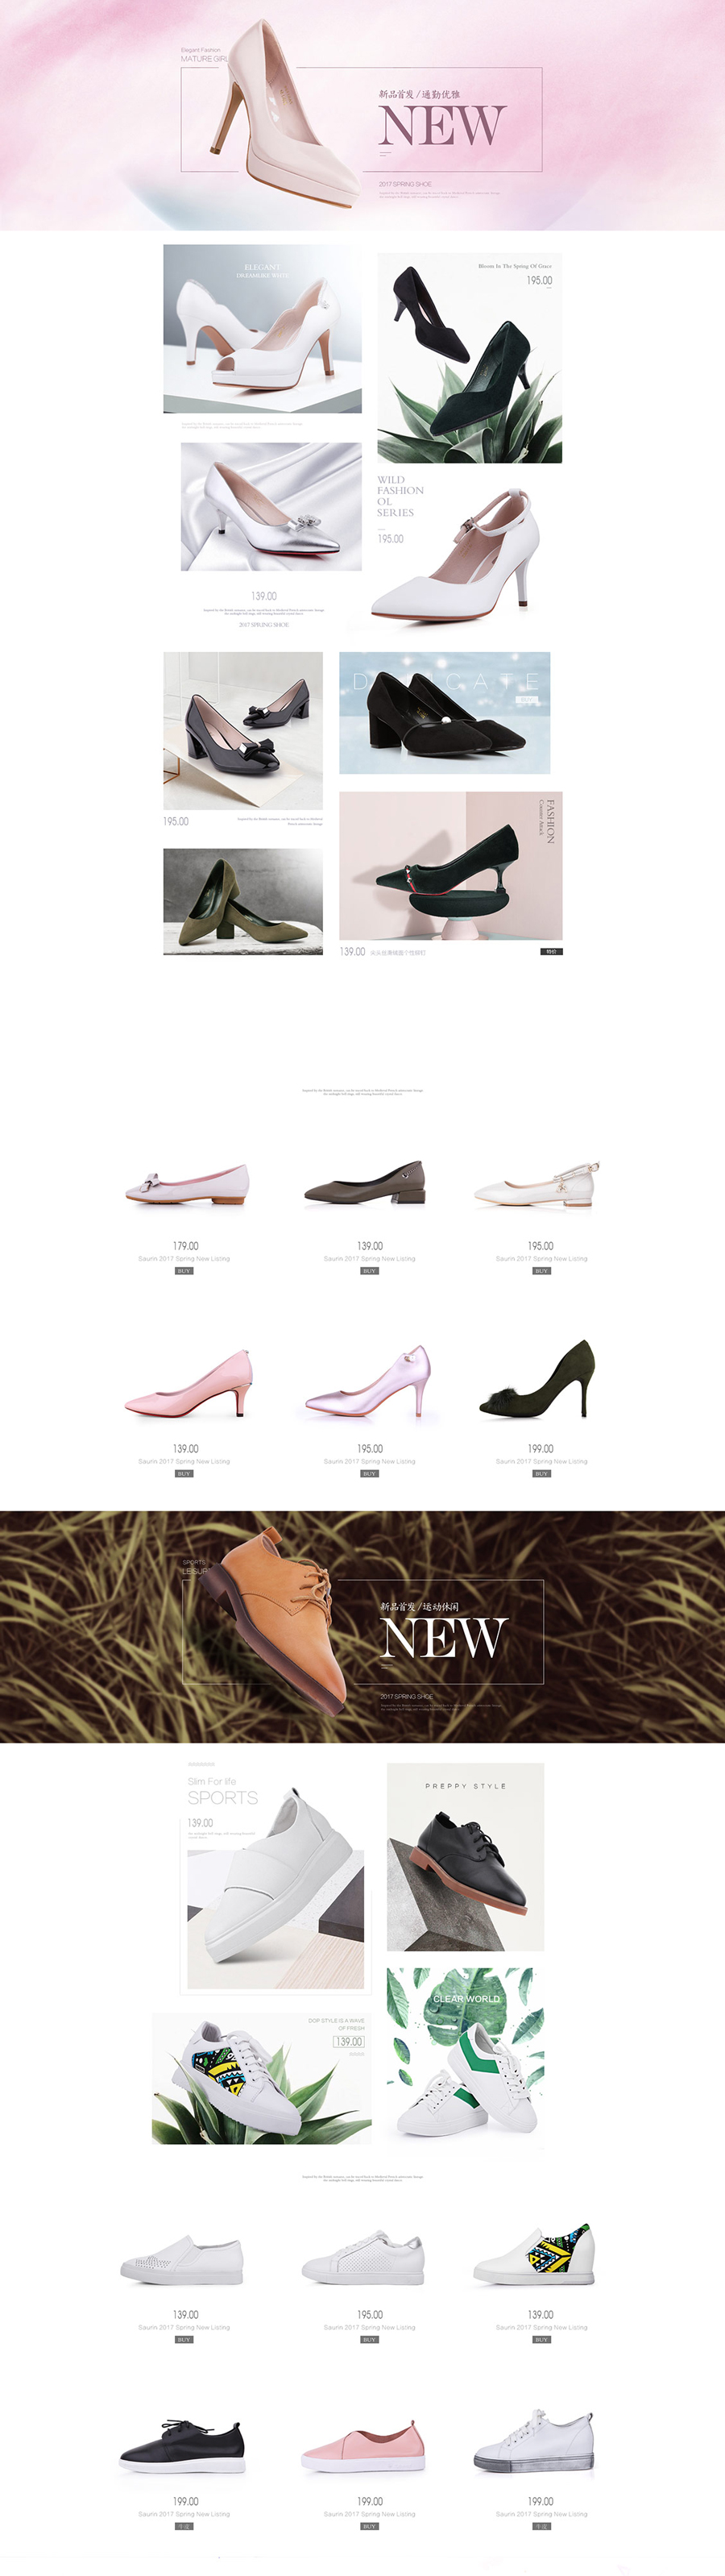 包包活动专题页面设计案例,女鞋专题页面设计案例,索兰女鞋包包活动专题页面设计案例